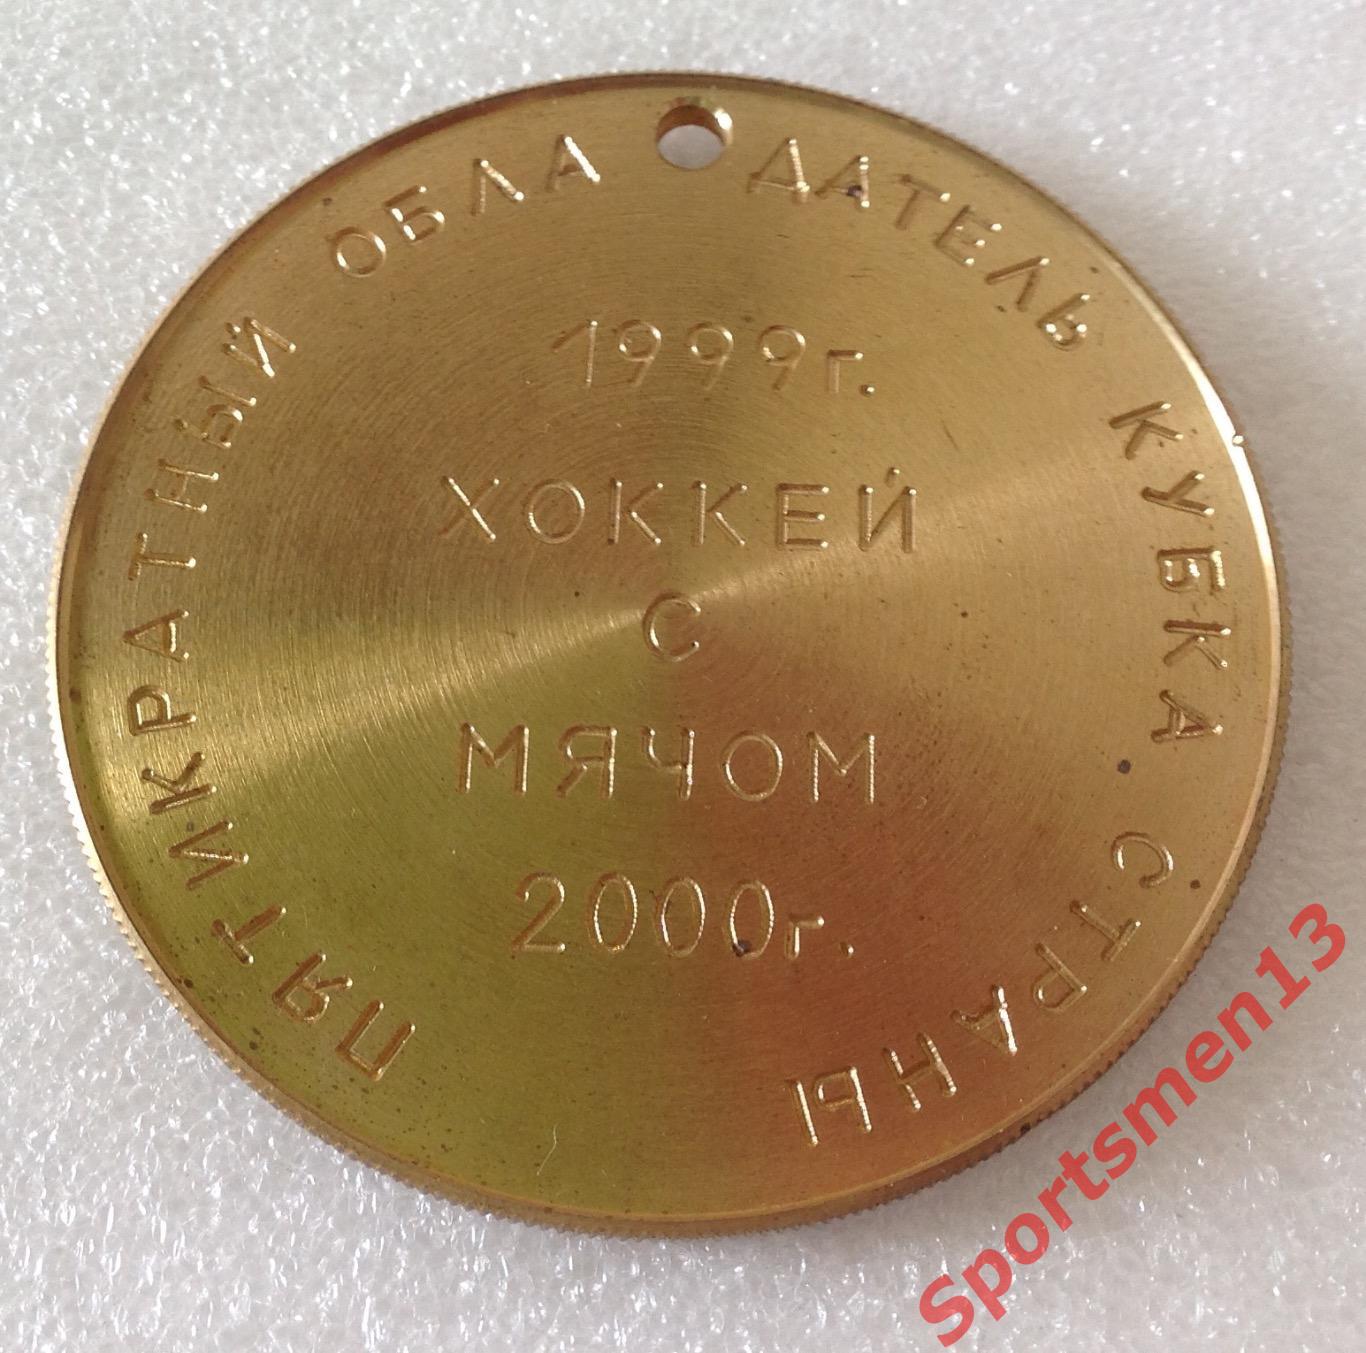 Хоккей с мячом. Медаль памятная. Водник Архангельск, 2000